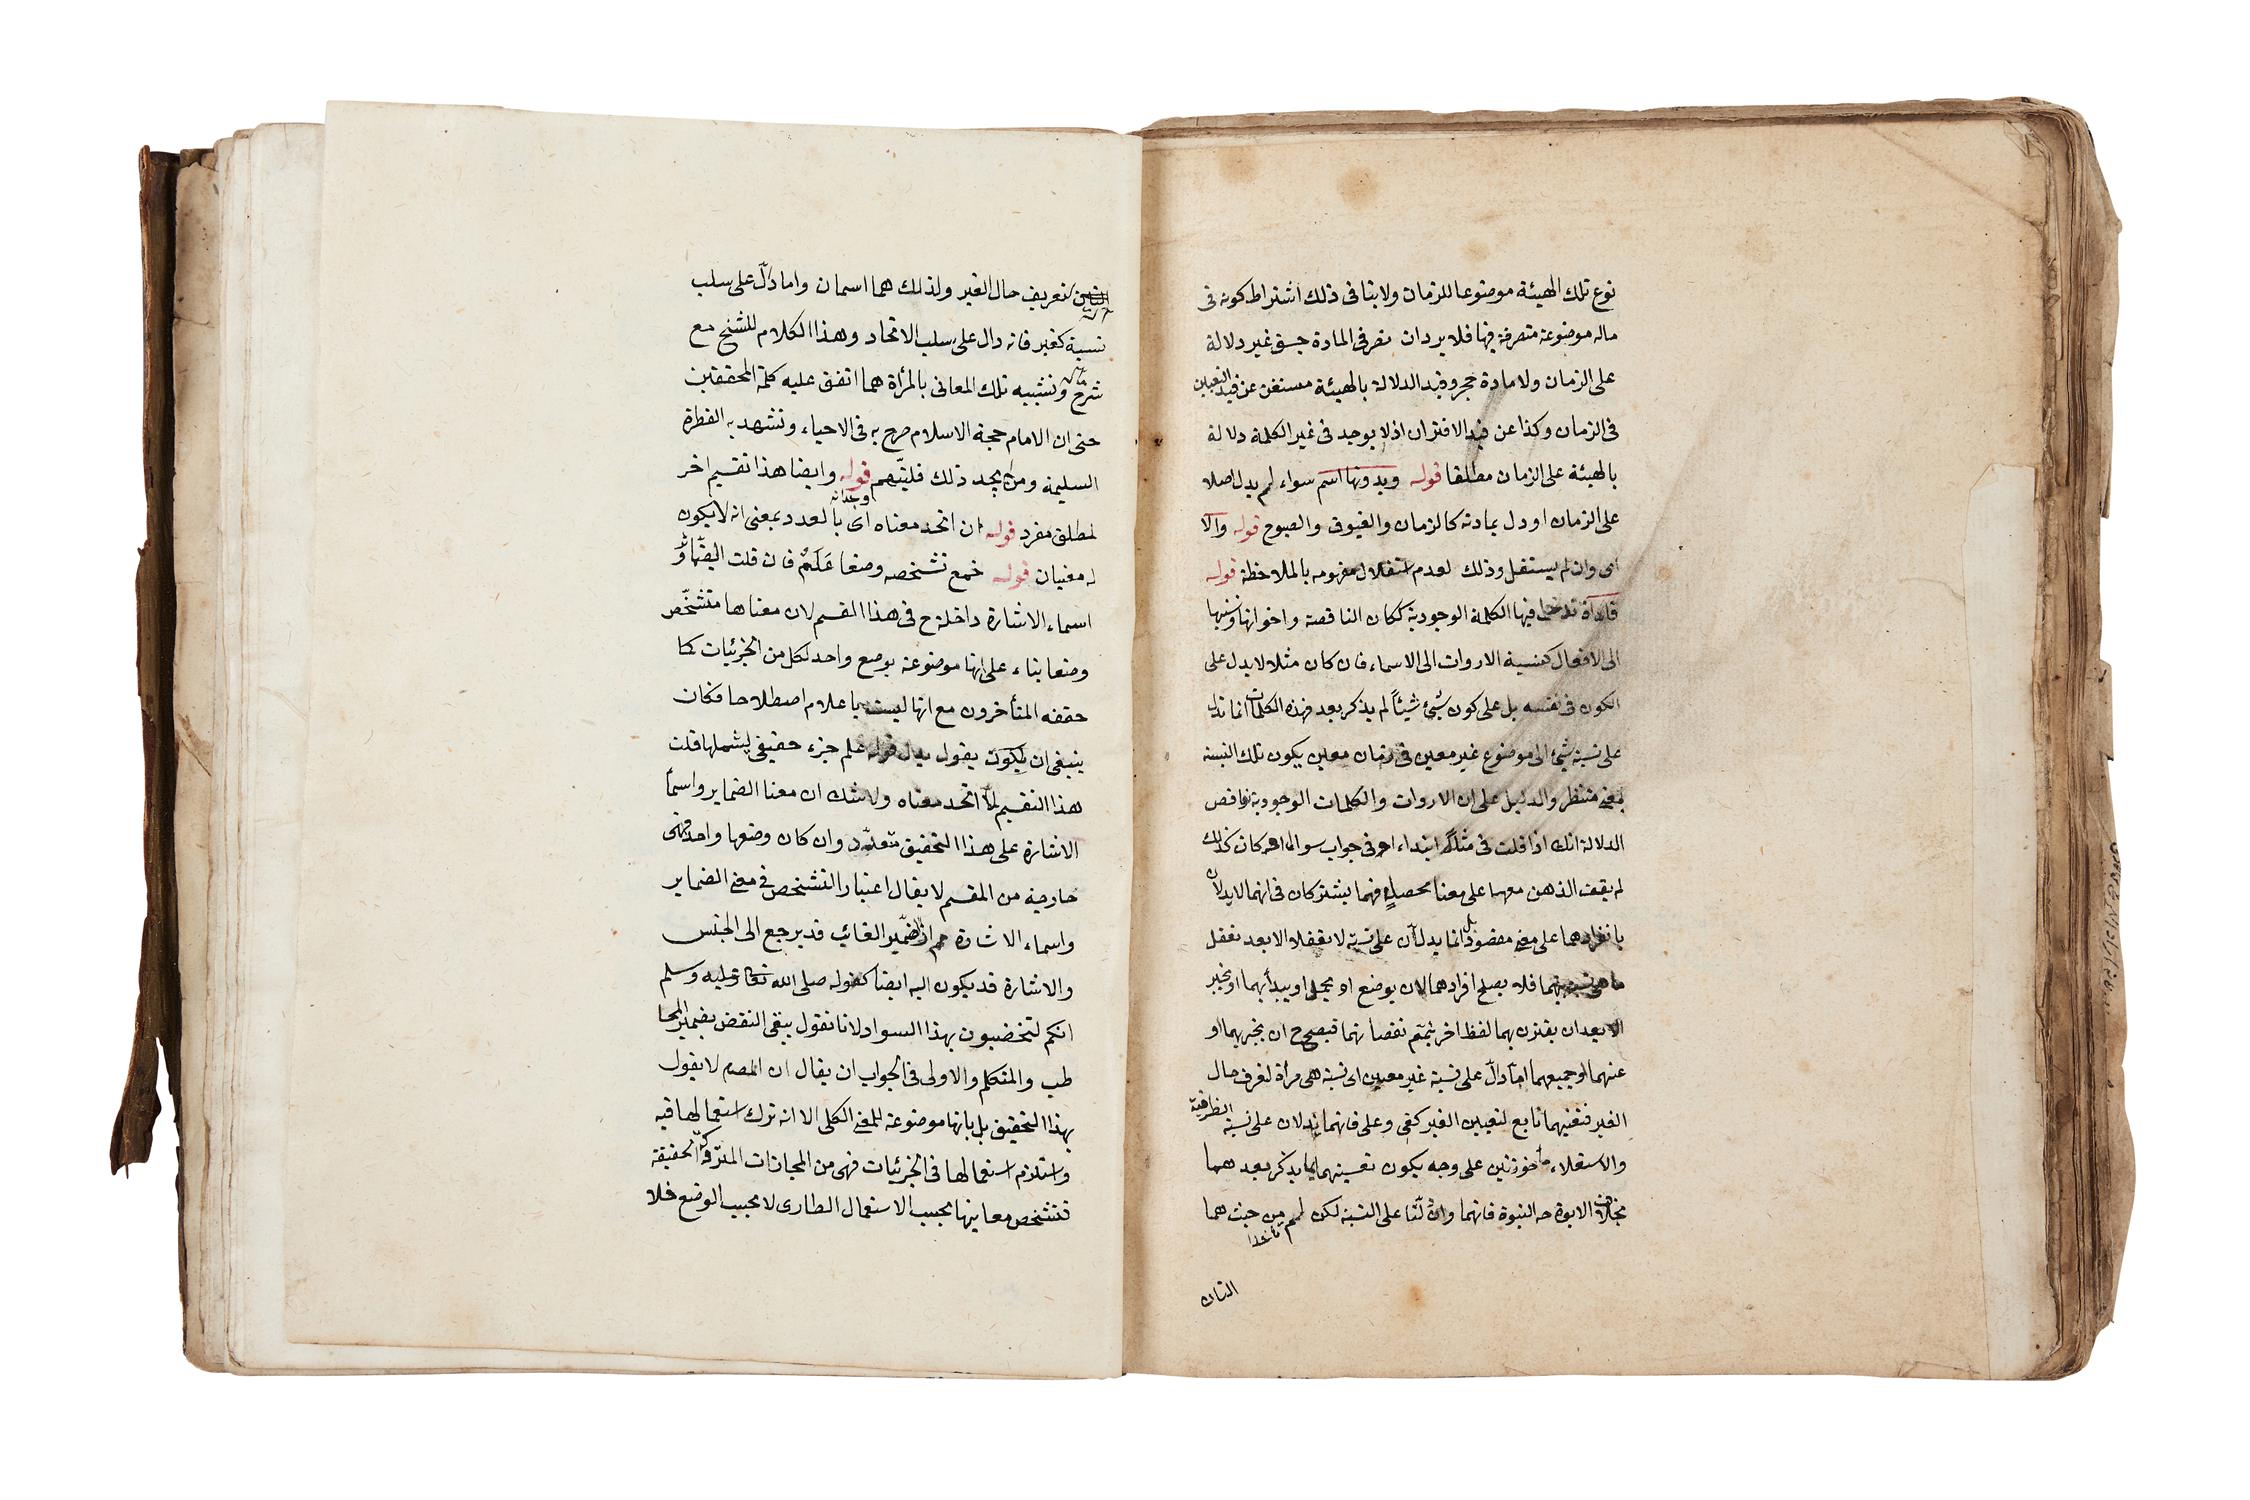 Ɵ Tazhib al-Mantiq wa al-Kalam, manuscript on paper [probably Ottoman Turkey, c. 1190 AH (1776 AD)] - Image 2 of 3